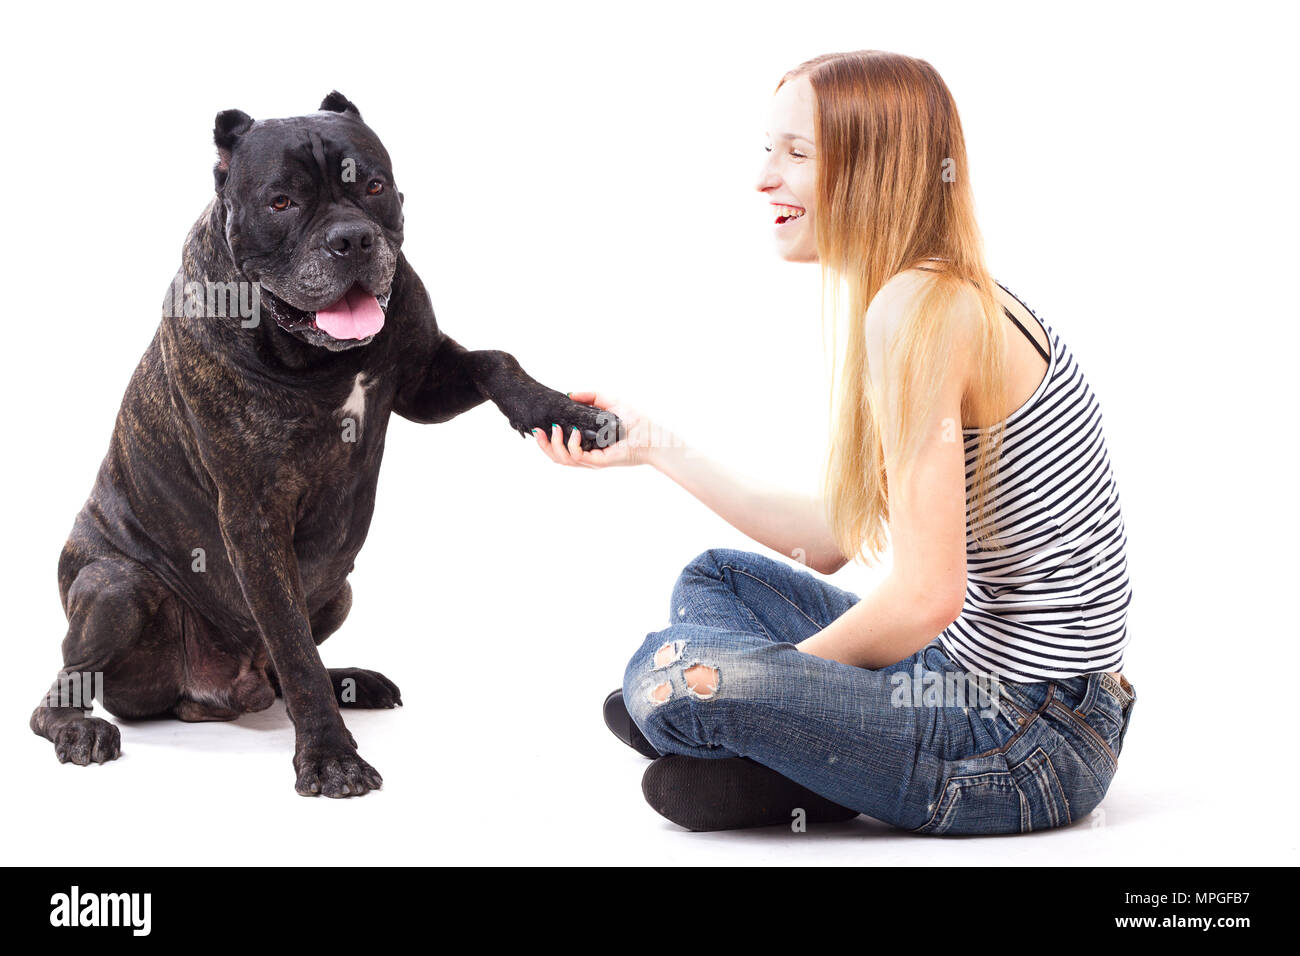 Cane Corso cane esegue un comando dare paw. isolare Foto Stock